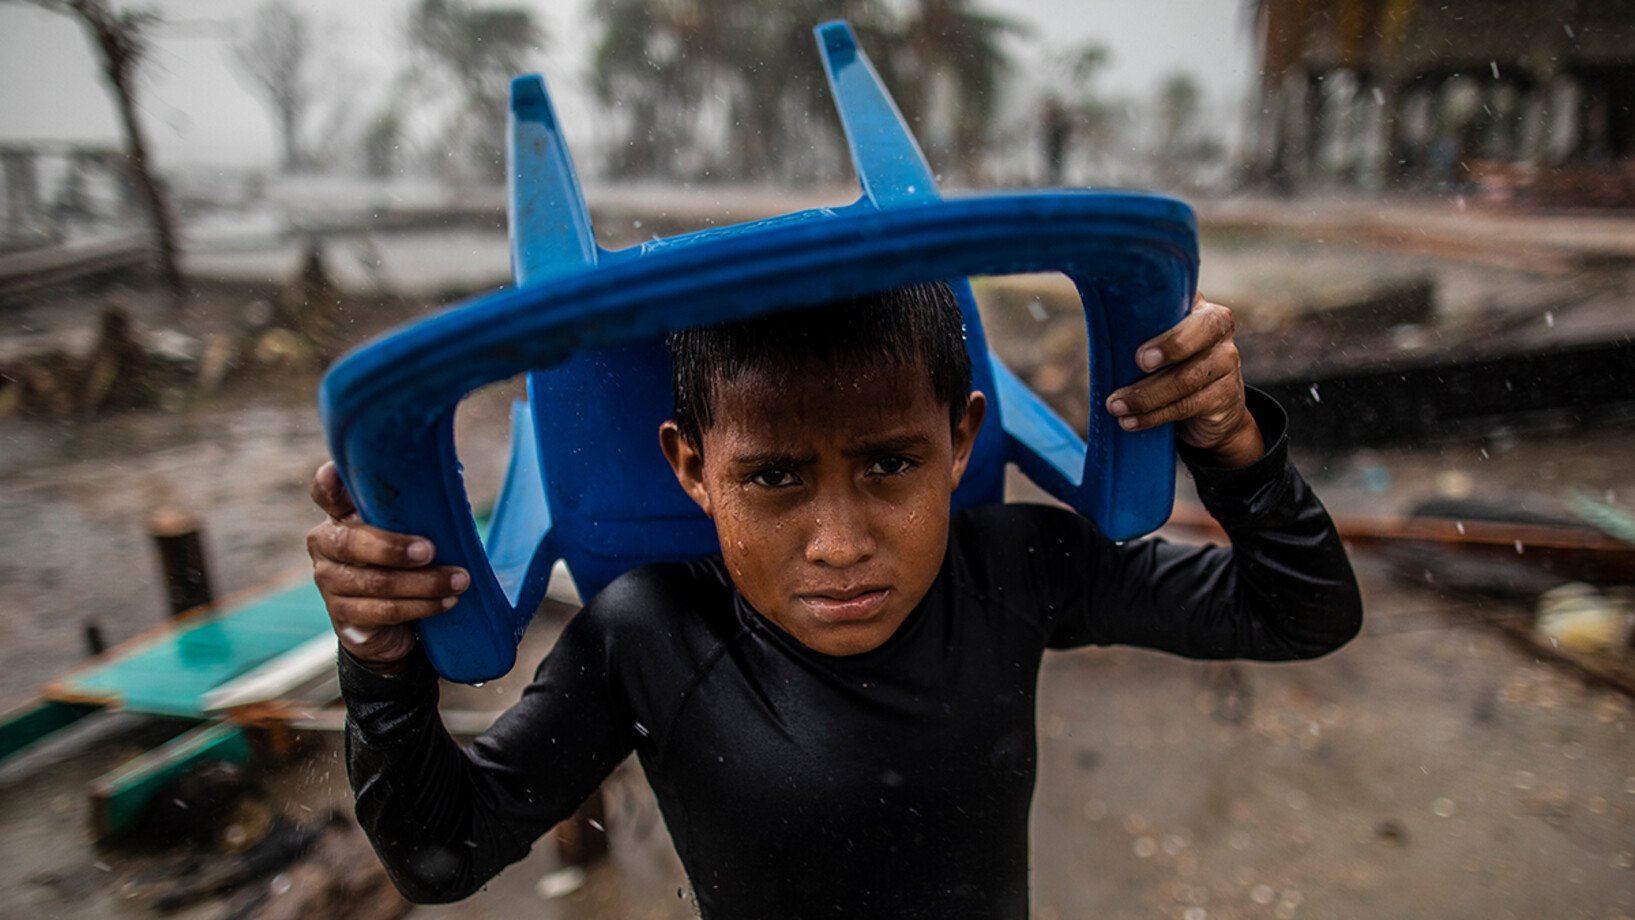 Le 17 novembre 2020 à Bilwi, au Nicaragua, un enfant se protège des fortes pluies avec une chaise en plastique, debout à l'endroit où se trouvait sa maison, après qu'elle ait été détruite par les vents violents, la houle et les pluies provoquées par l'ouragan Iota.